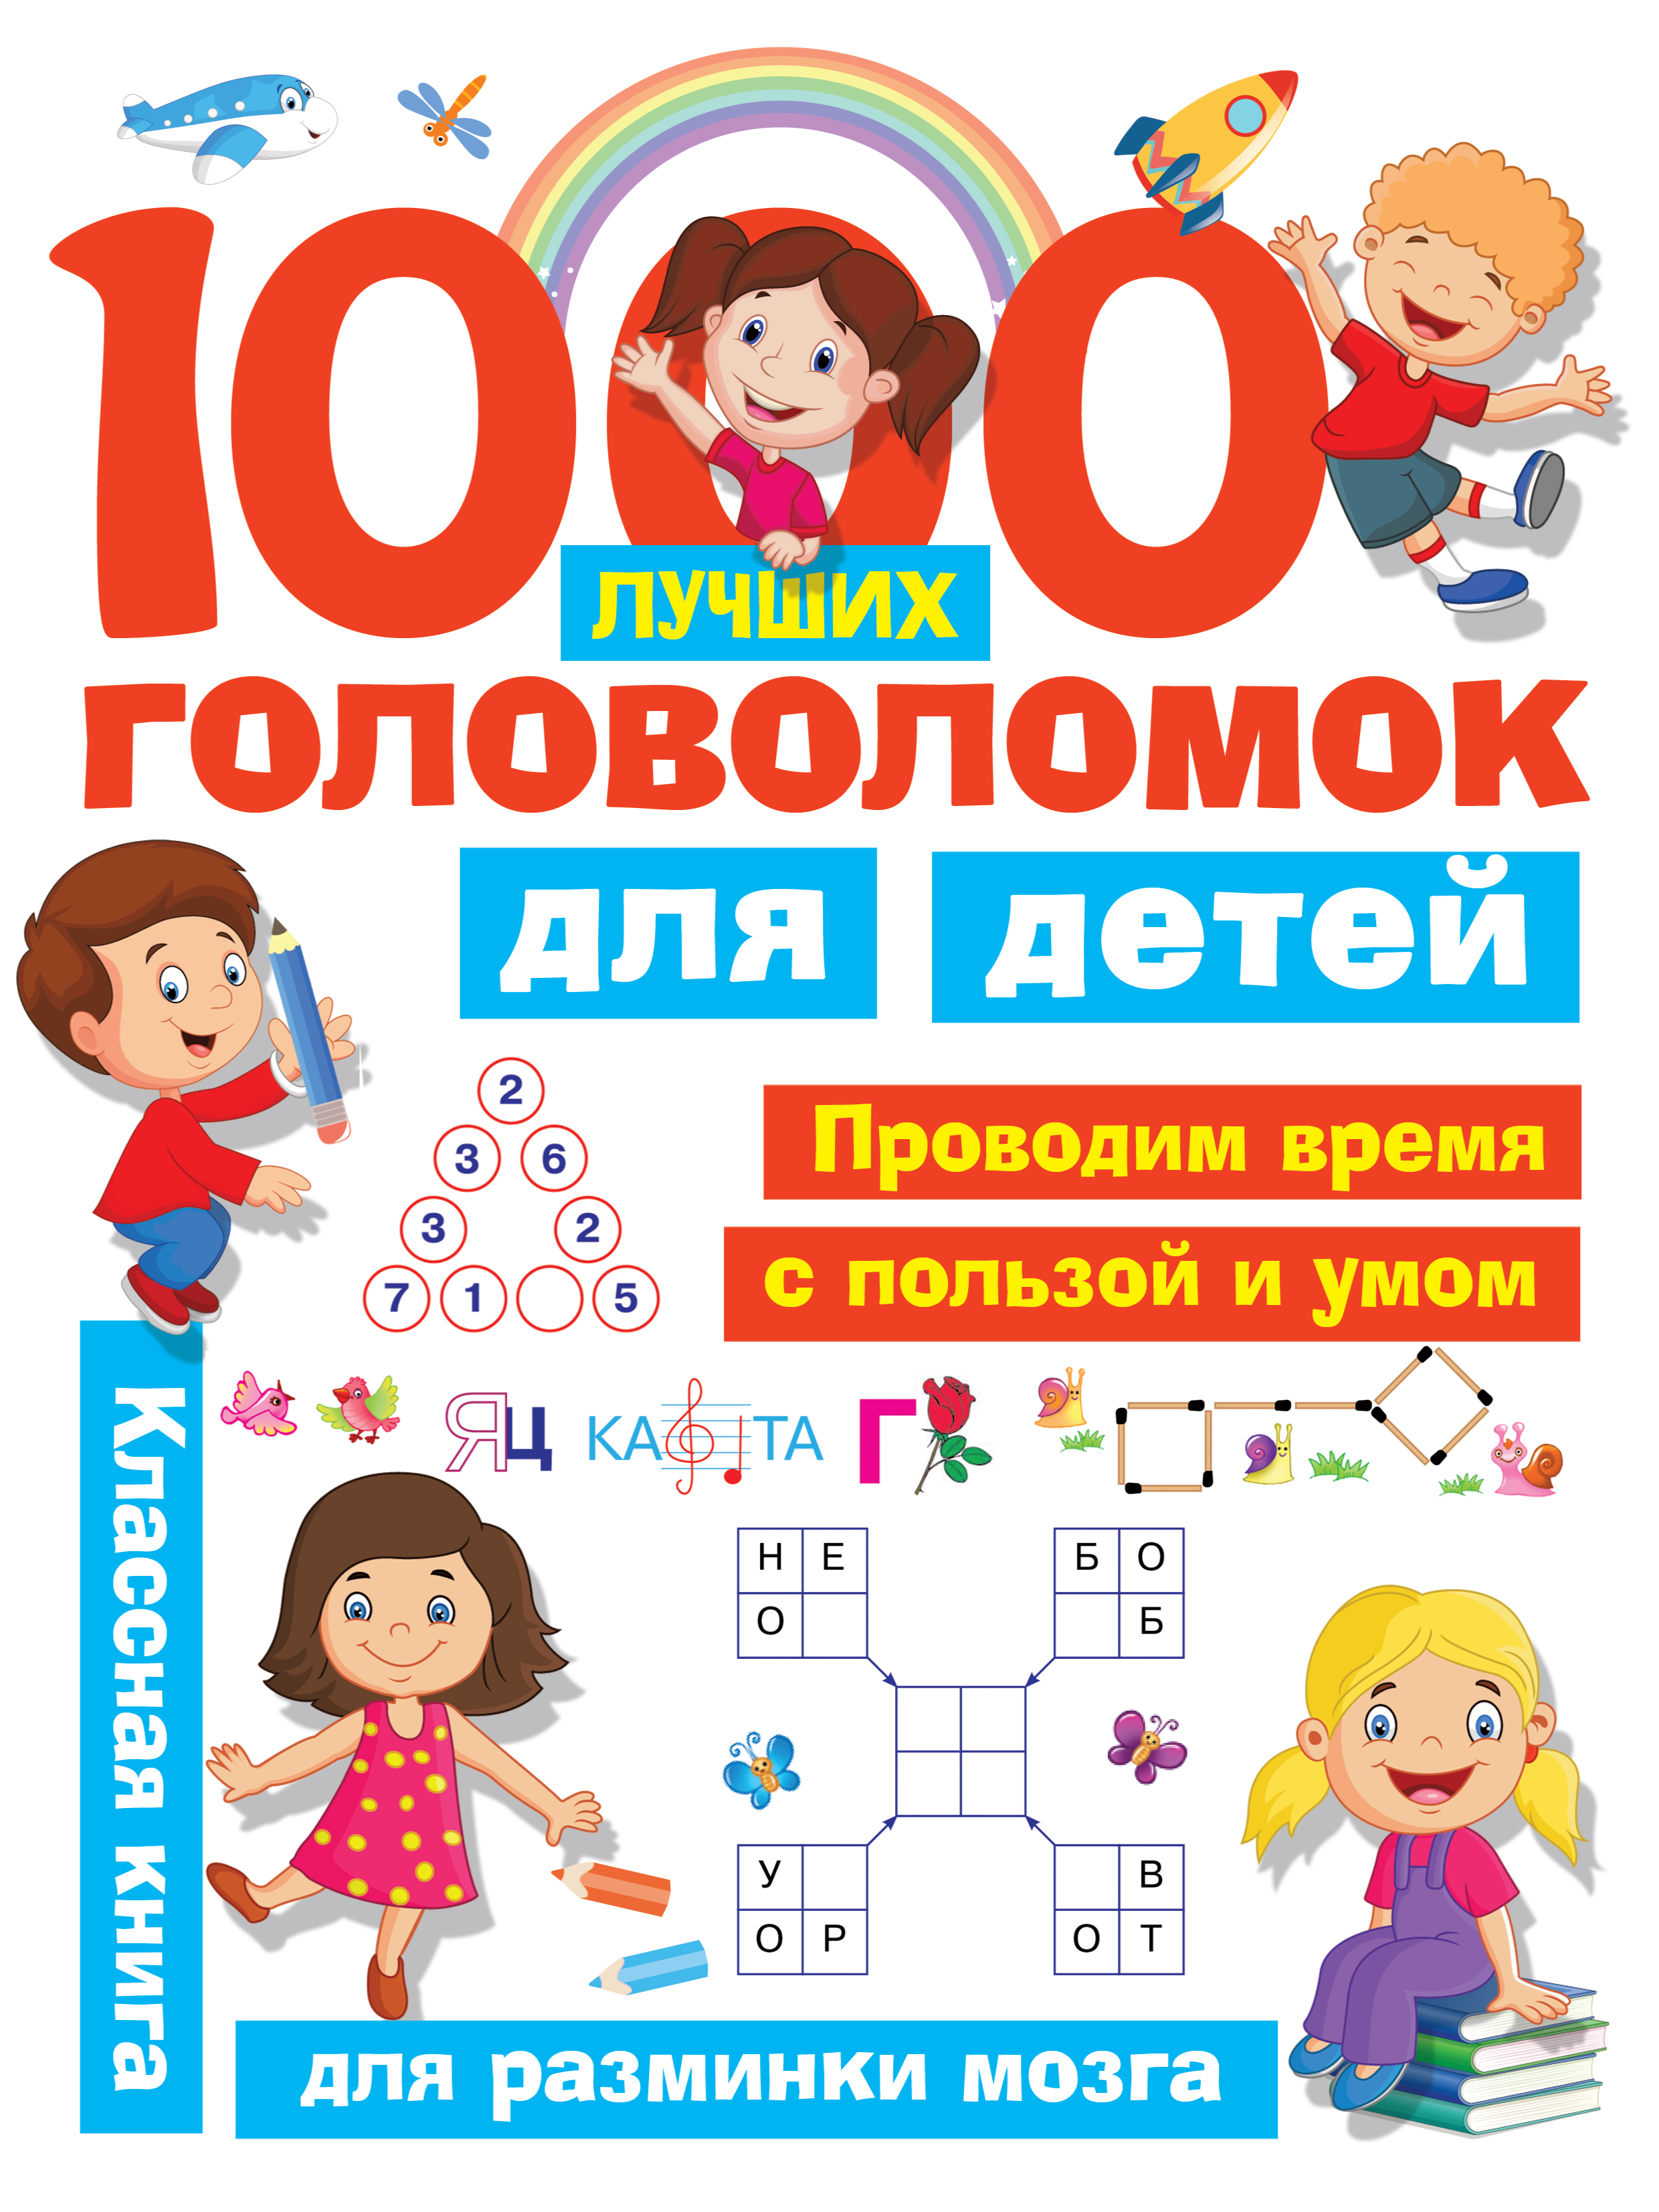 дмитриева в г 1000 лучших головоломок для детей Дмитриева Валентина Геннадьевна 1000 лучших головоломок для детей